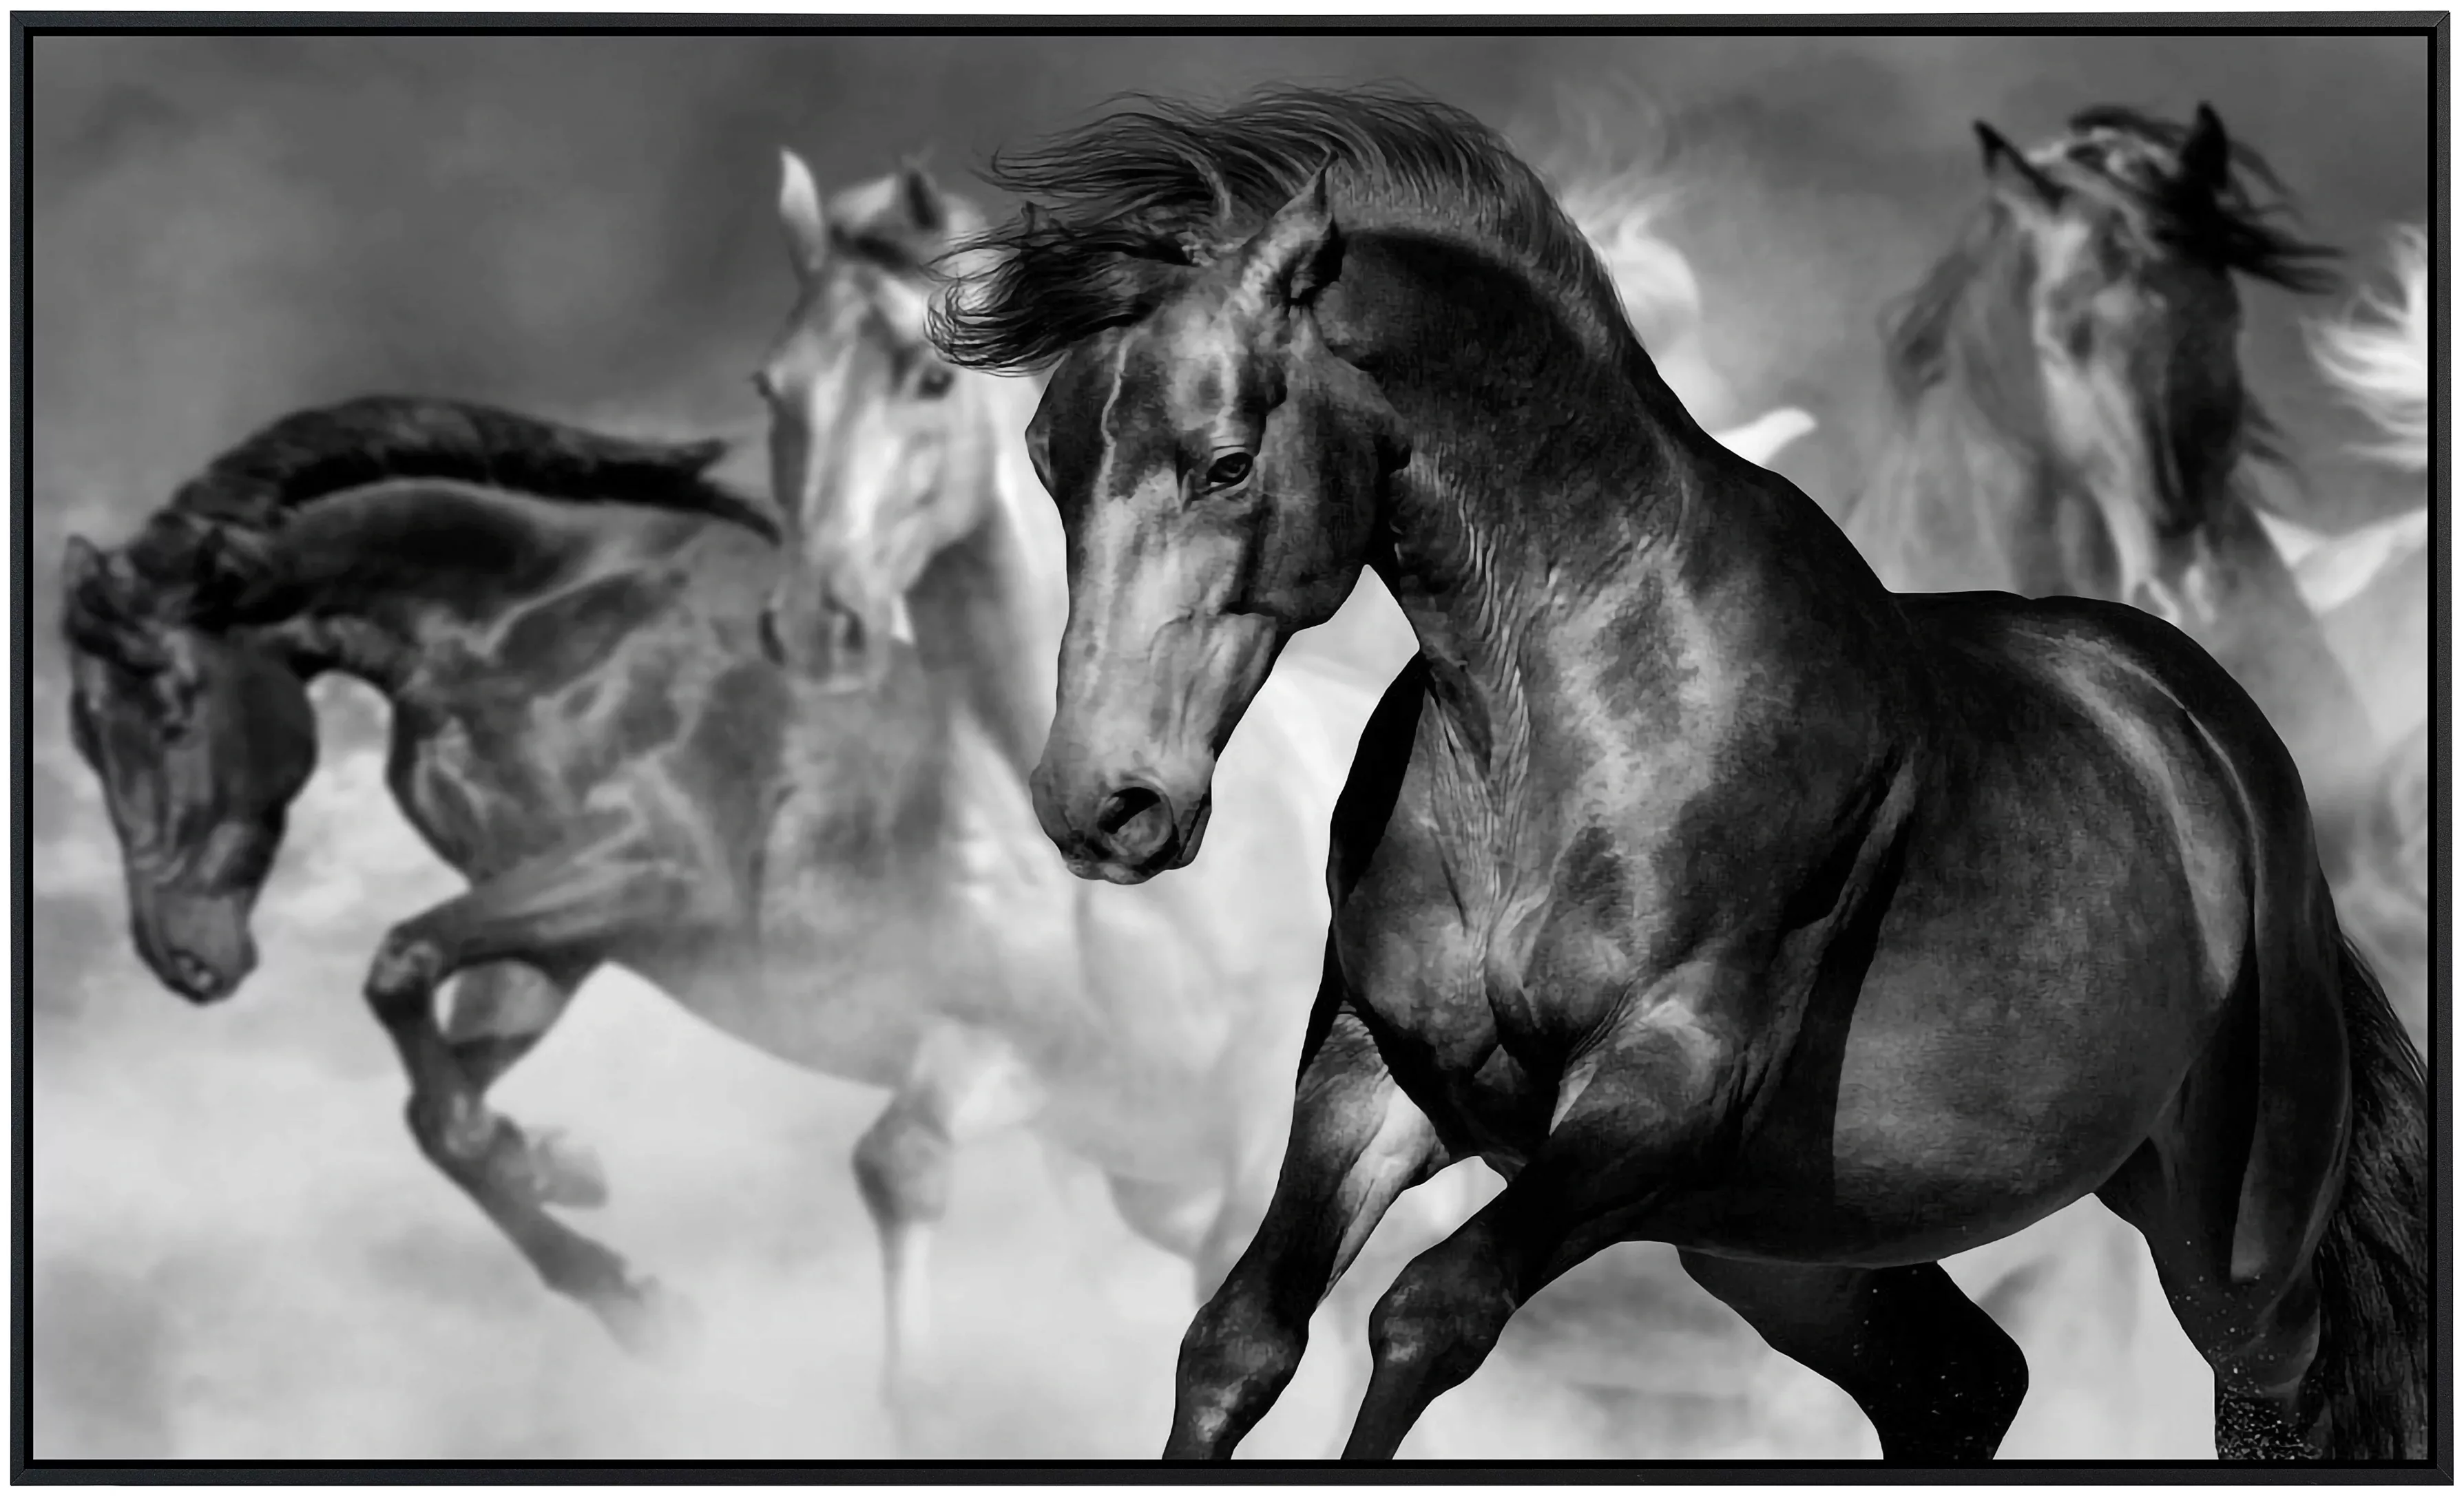 Papermoon Infrarotheizung »Pferde Schwarz & Weiß« günstig online kaufen